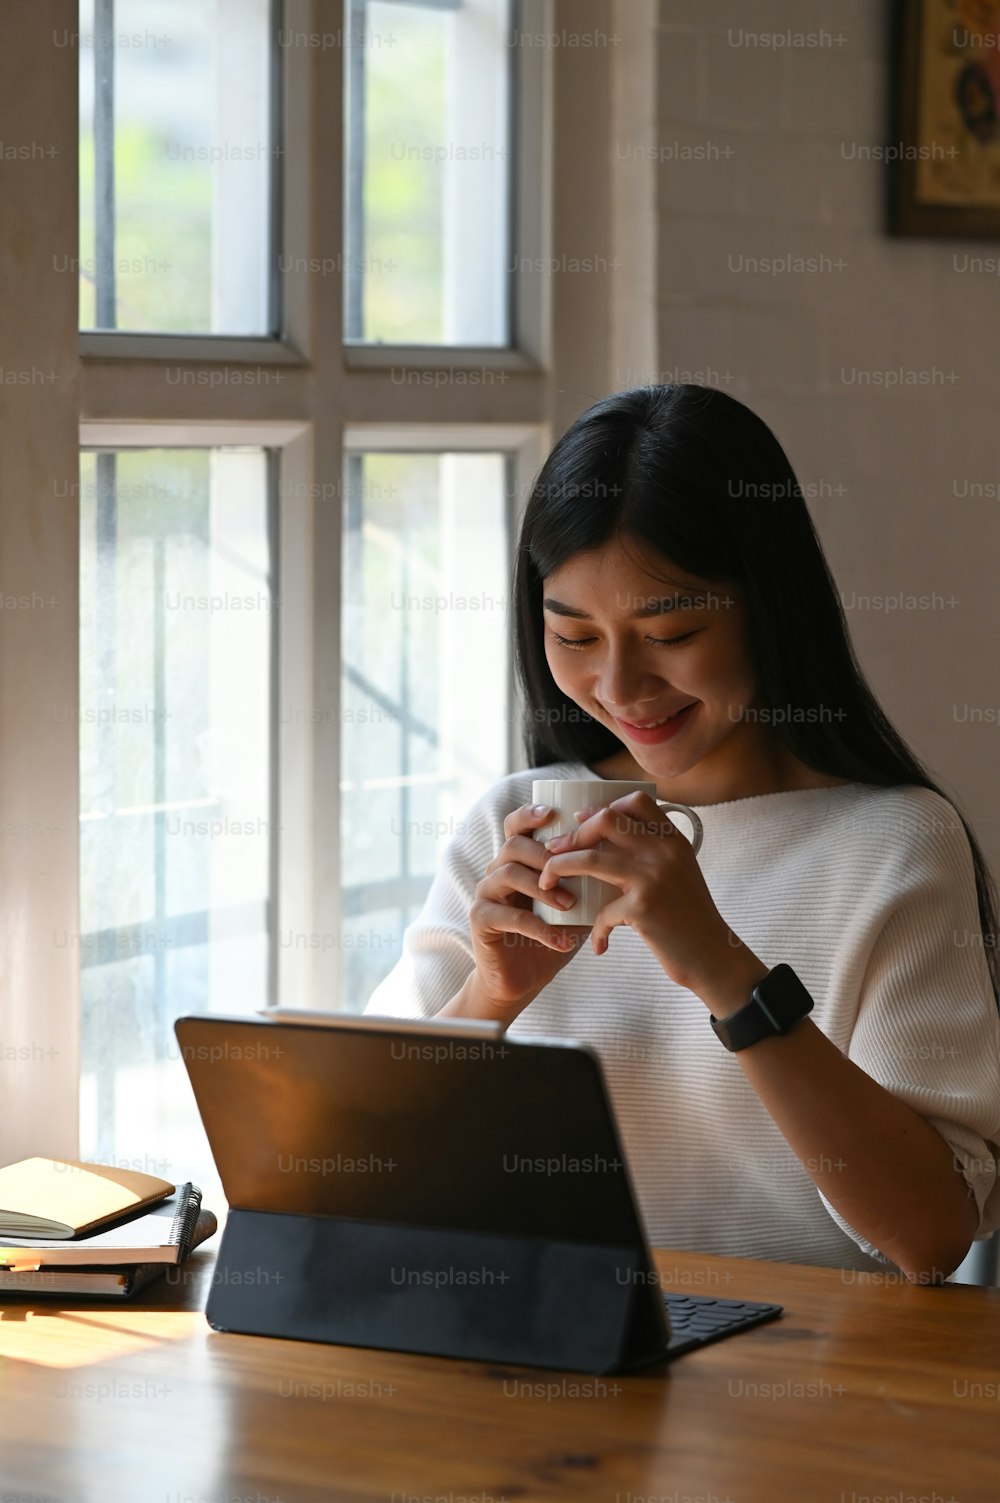 하얀 면 드레스를 입은 젊은 창조적인 여성이 커피 컵을 손에 들고 편안한 거실을 배경으로 나무 테이블에서 일하는 사진.